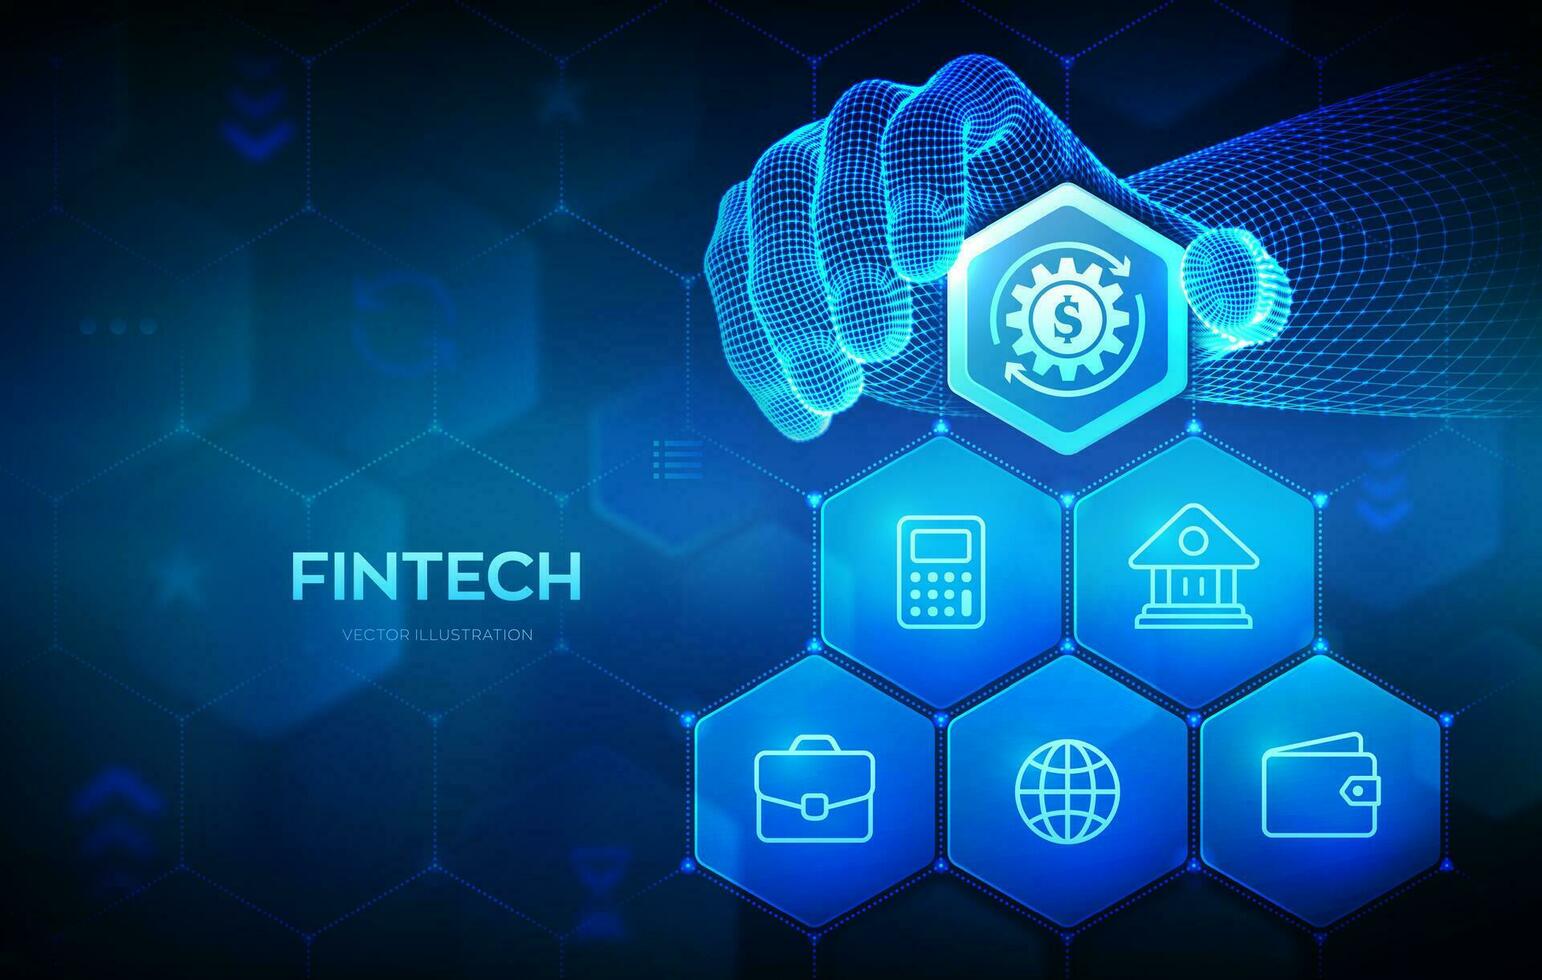 Fintech. finanziell Technologie, online Bankwesen und Crowdfunding Geschäft Konzept auf viral Bildschirm. Drahtmodell Hand setzt ein Element in ein Komposition visualisieren Fintech. Vektor Illustration.